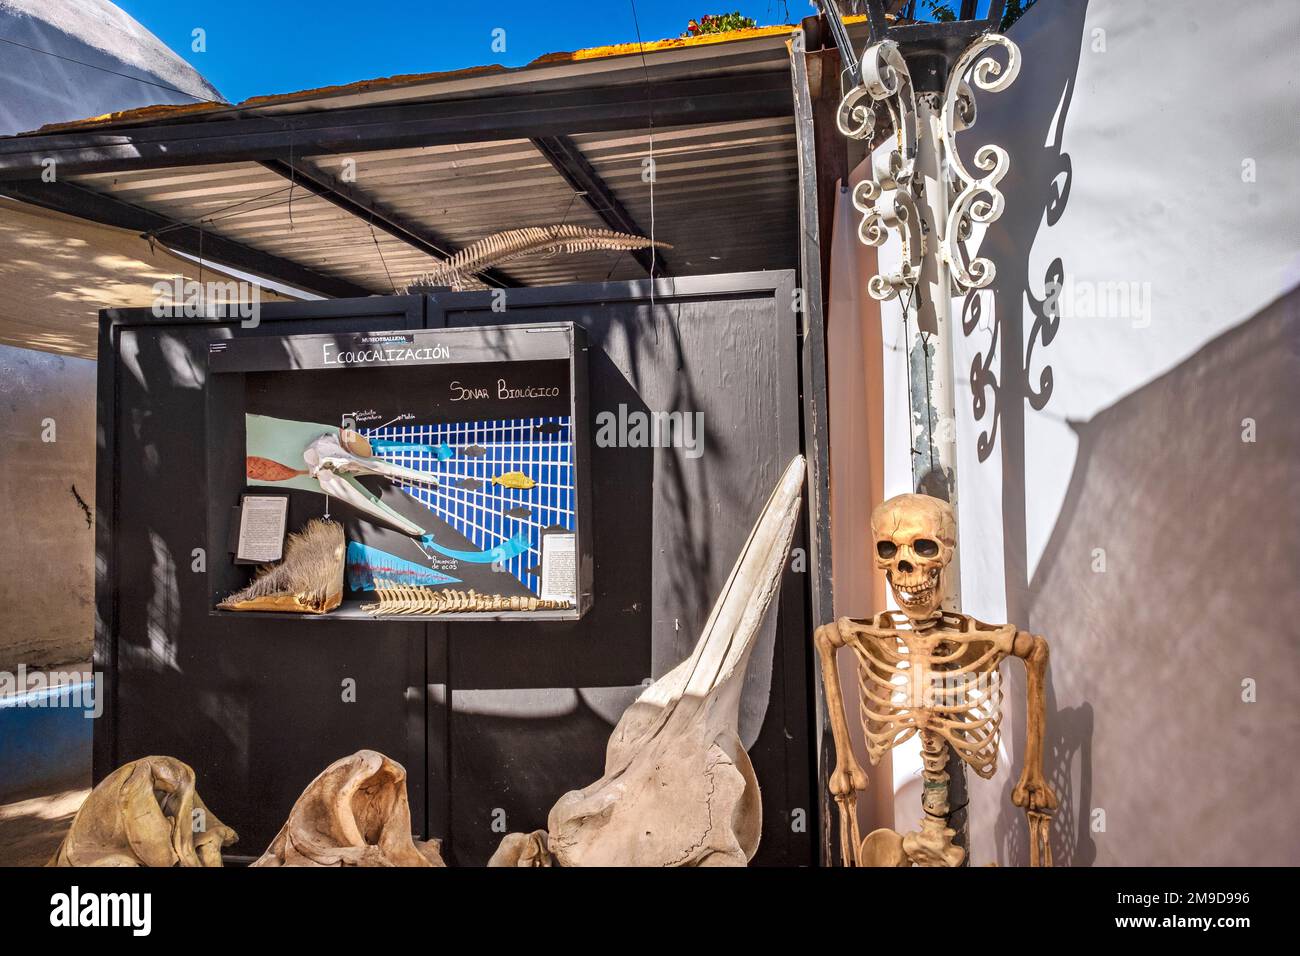 Squelette humain et dauphin exposé au Museo de la Ballena, la Paz, Baja California, Mexique Banque D'Images